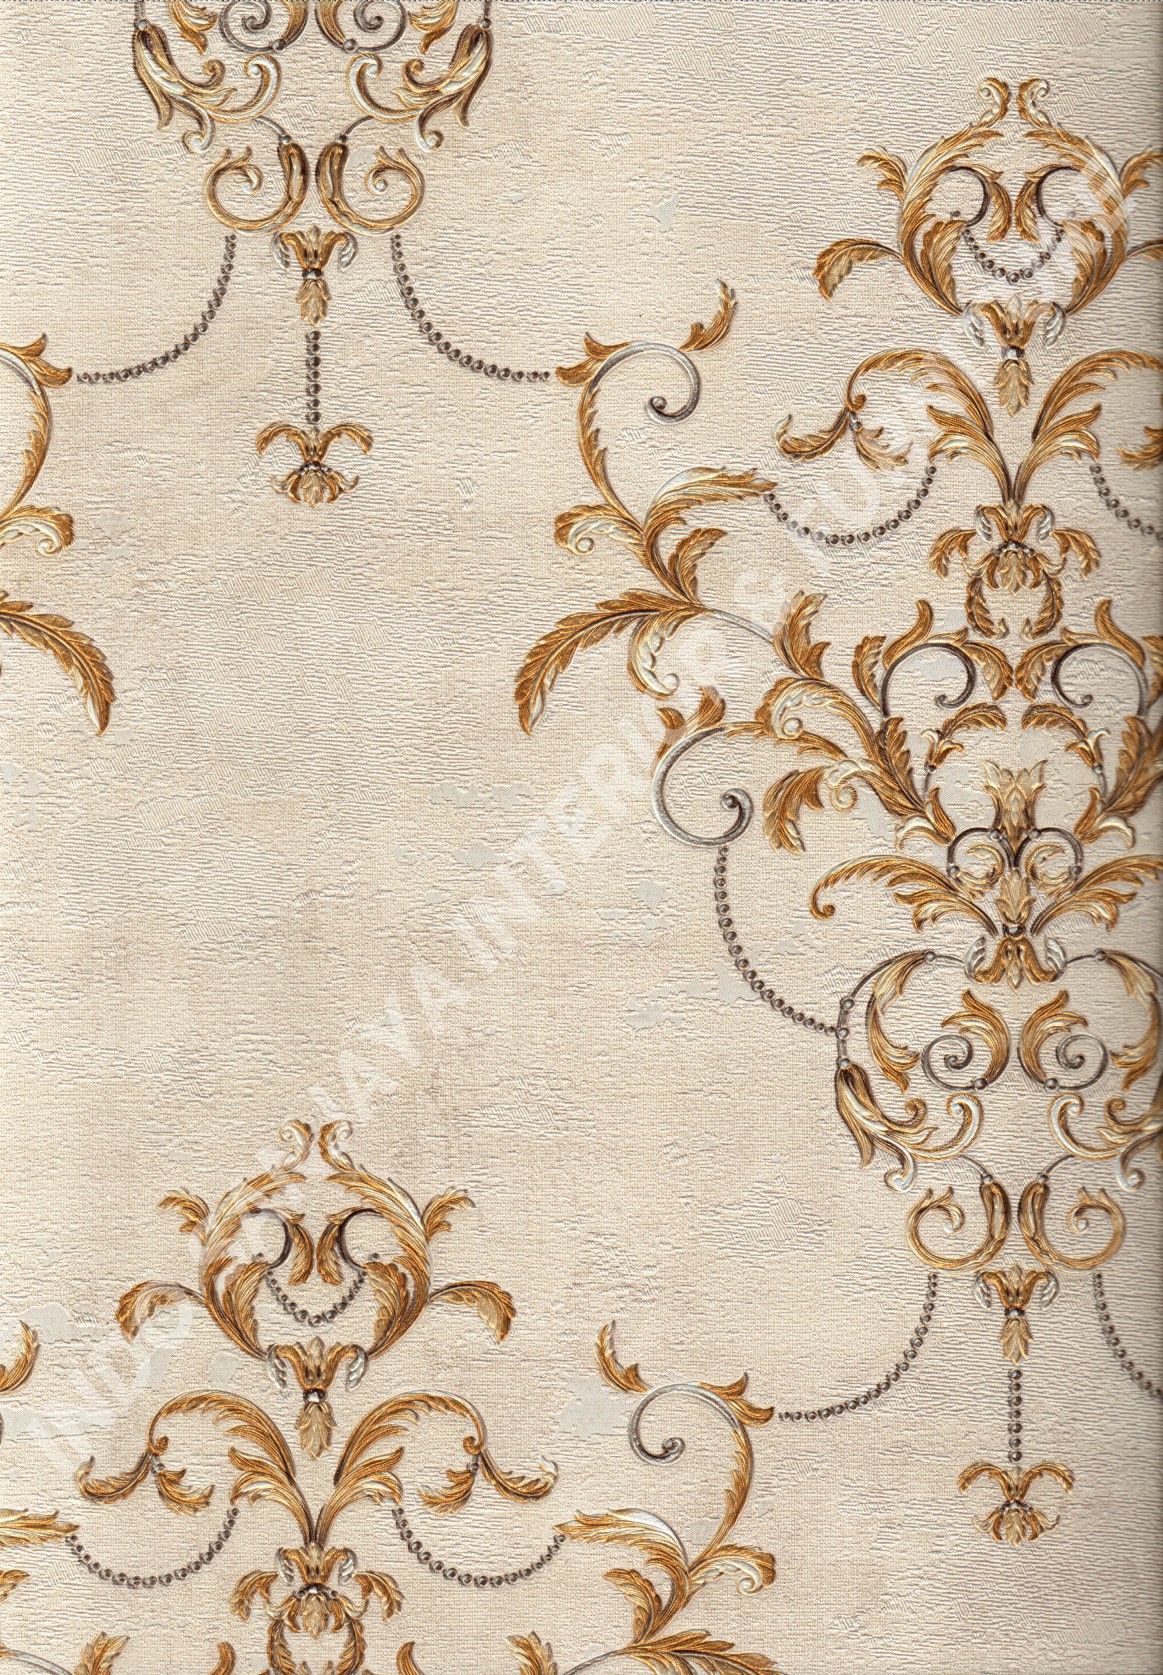 wallpaper DA VINCI:5006-2 corak Klasik / Batik (Damask) warna Cream